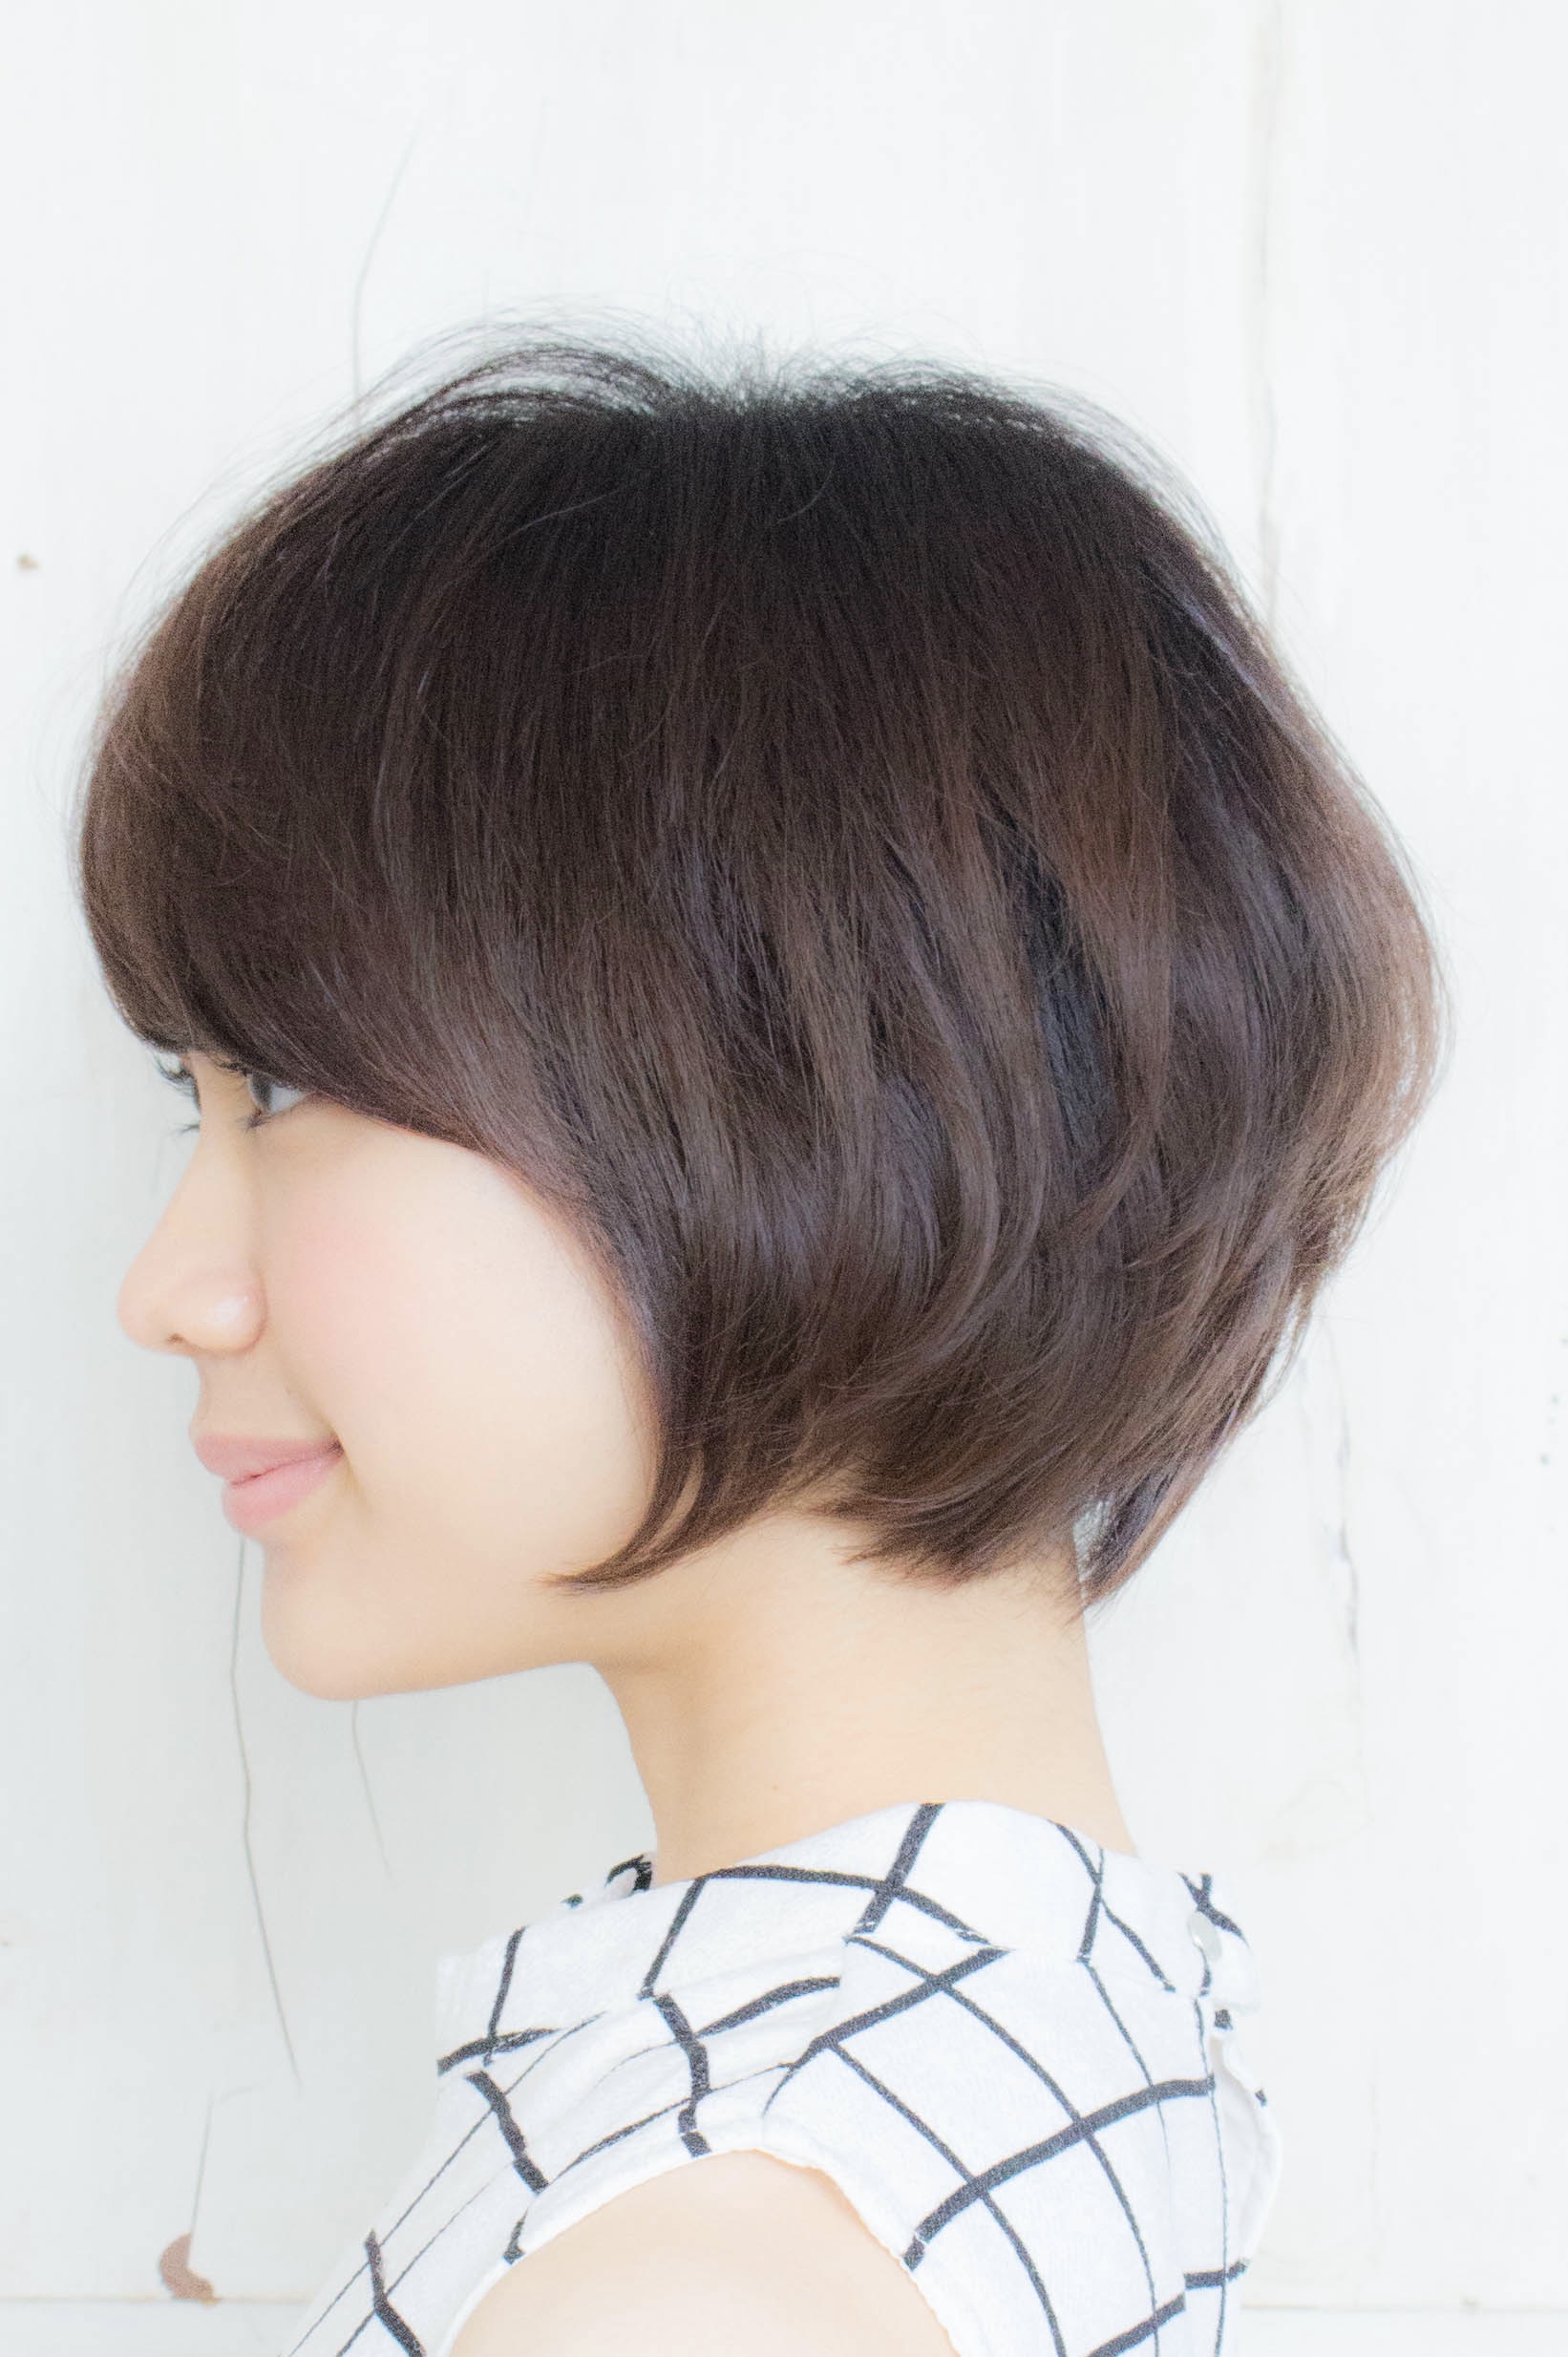 21年冬 40代の髪型のお悩みを 素敵に生かすボブのヘアカタログ 似合わせカットが上手い東京の美容師 美容室minx銀座 蛭田のブログ